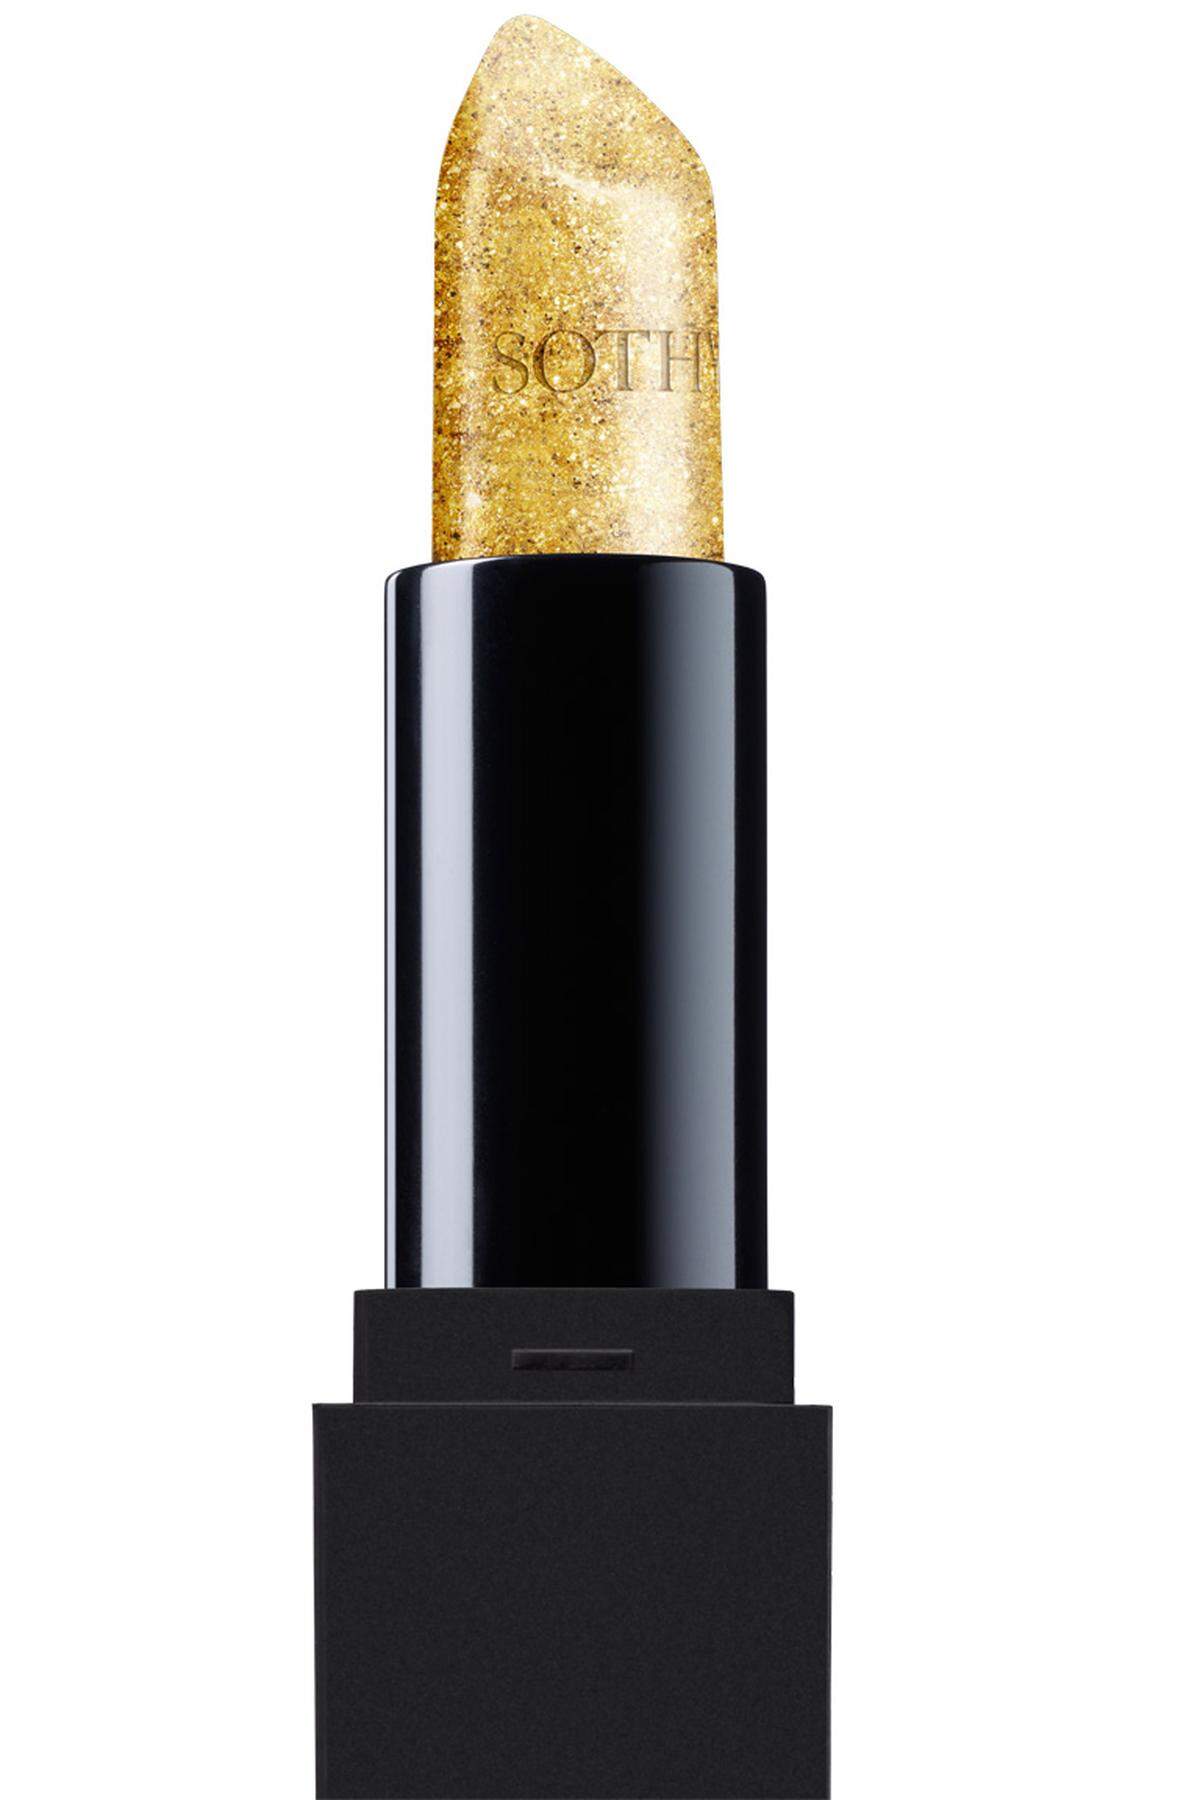 Einen goldenen Schimmer soll der Lippenstift „Or des Arts“ von Sothys hinterlassen (24 Euro).